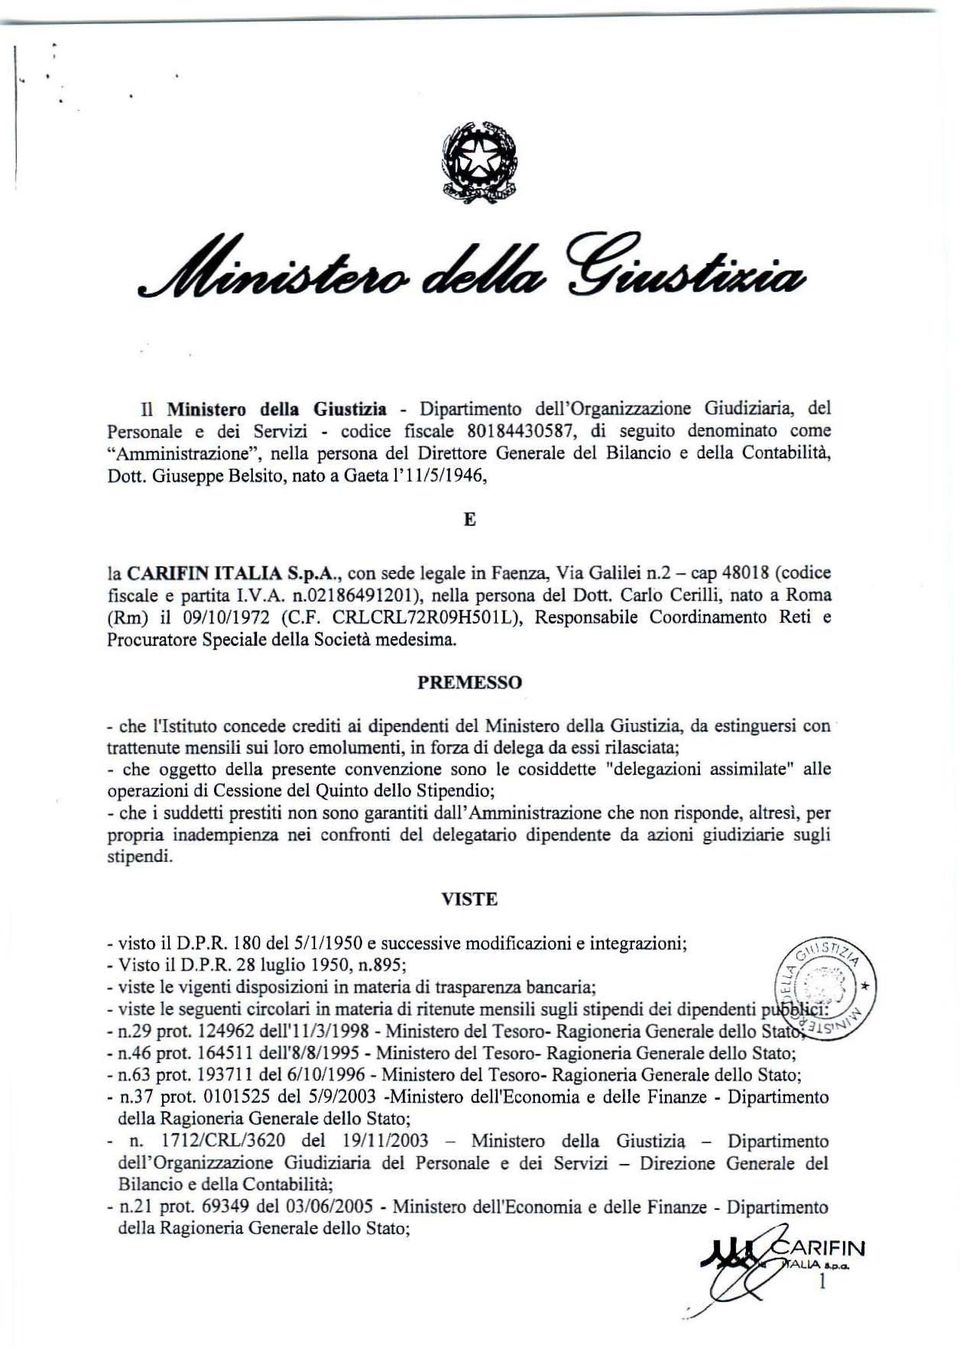 2 - cap 48018 (codice fiscale e partita I.V.A. n.02186491201), nella persona del Dott. Carlo Cerilli, nato a Roma (Rm) il 09/10/1972 (C.F.